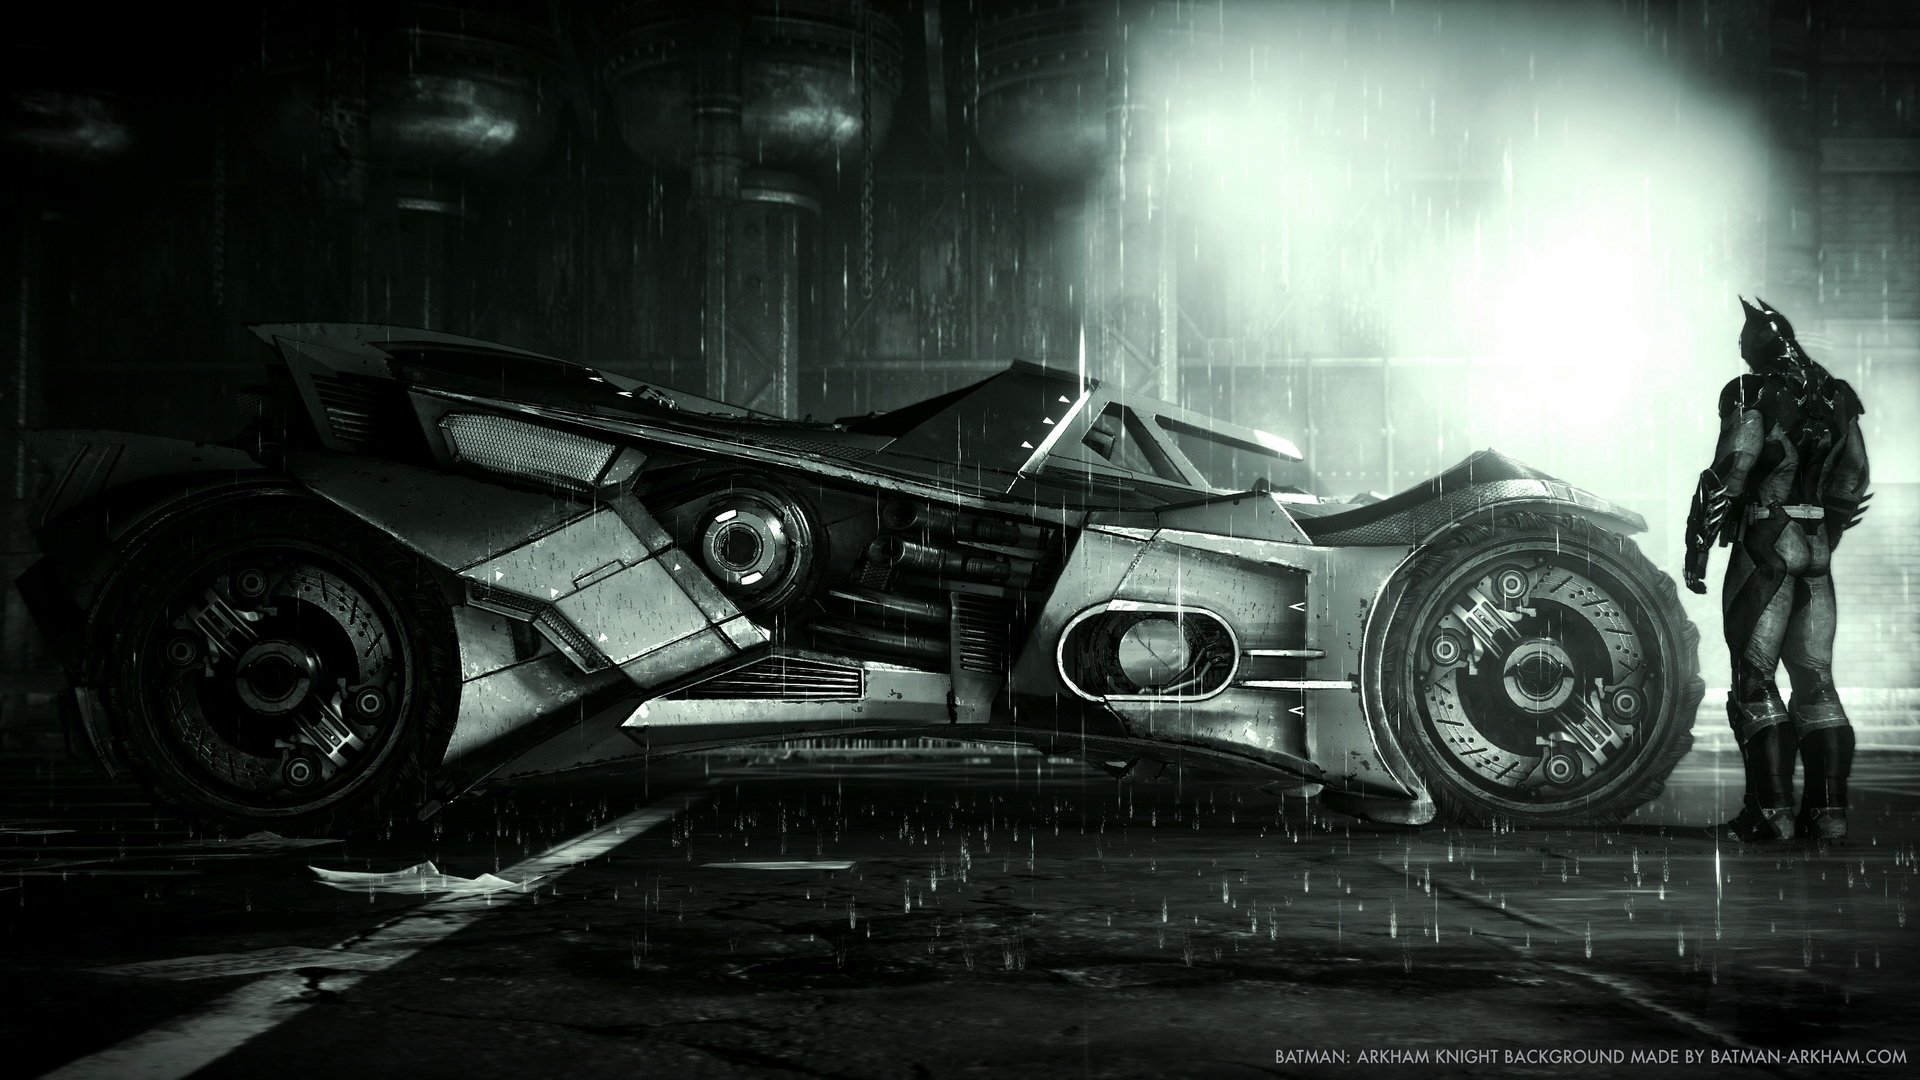 Batman Arkham Knight - Batmobile Wall Mural